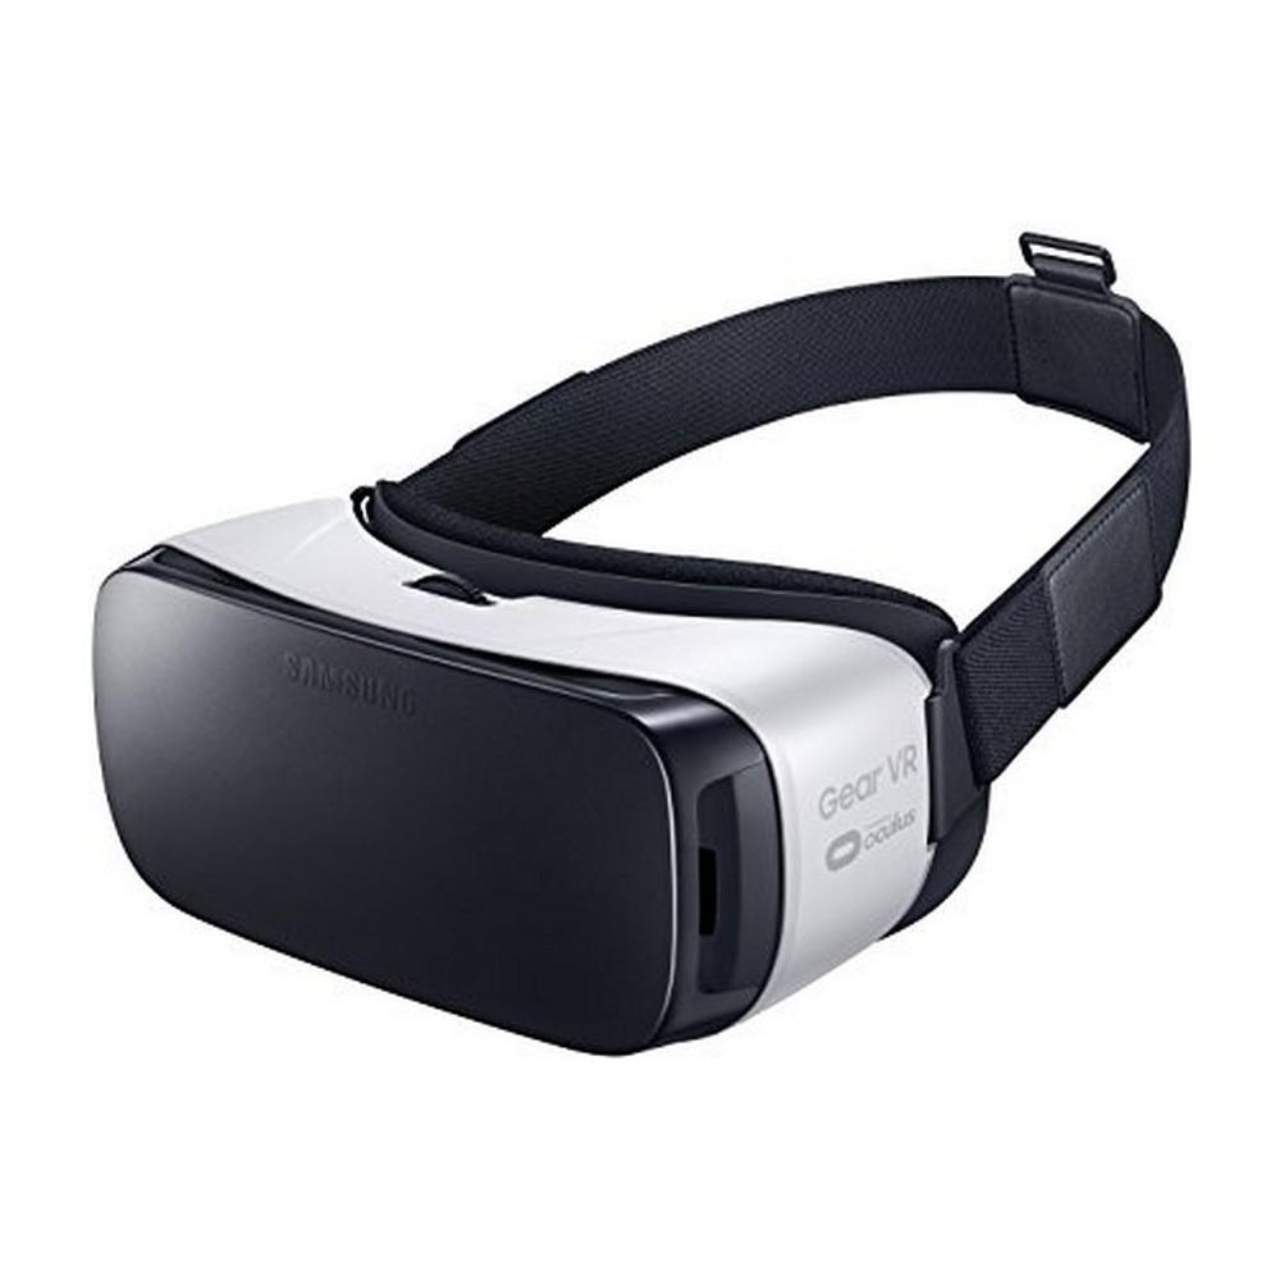 Gli occhiali VR Samsung Gear VR